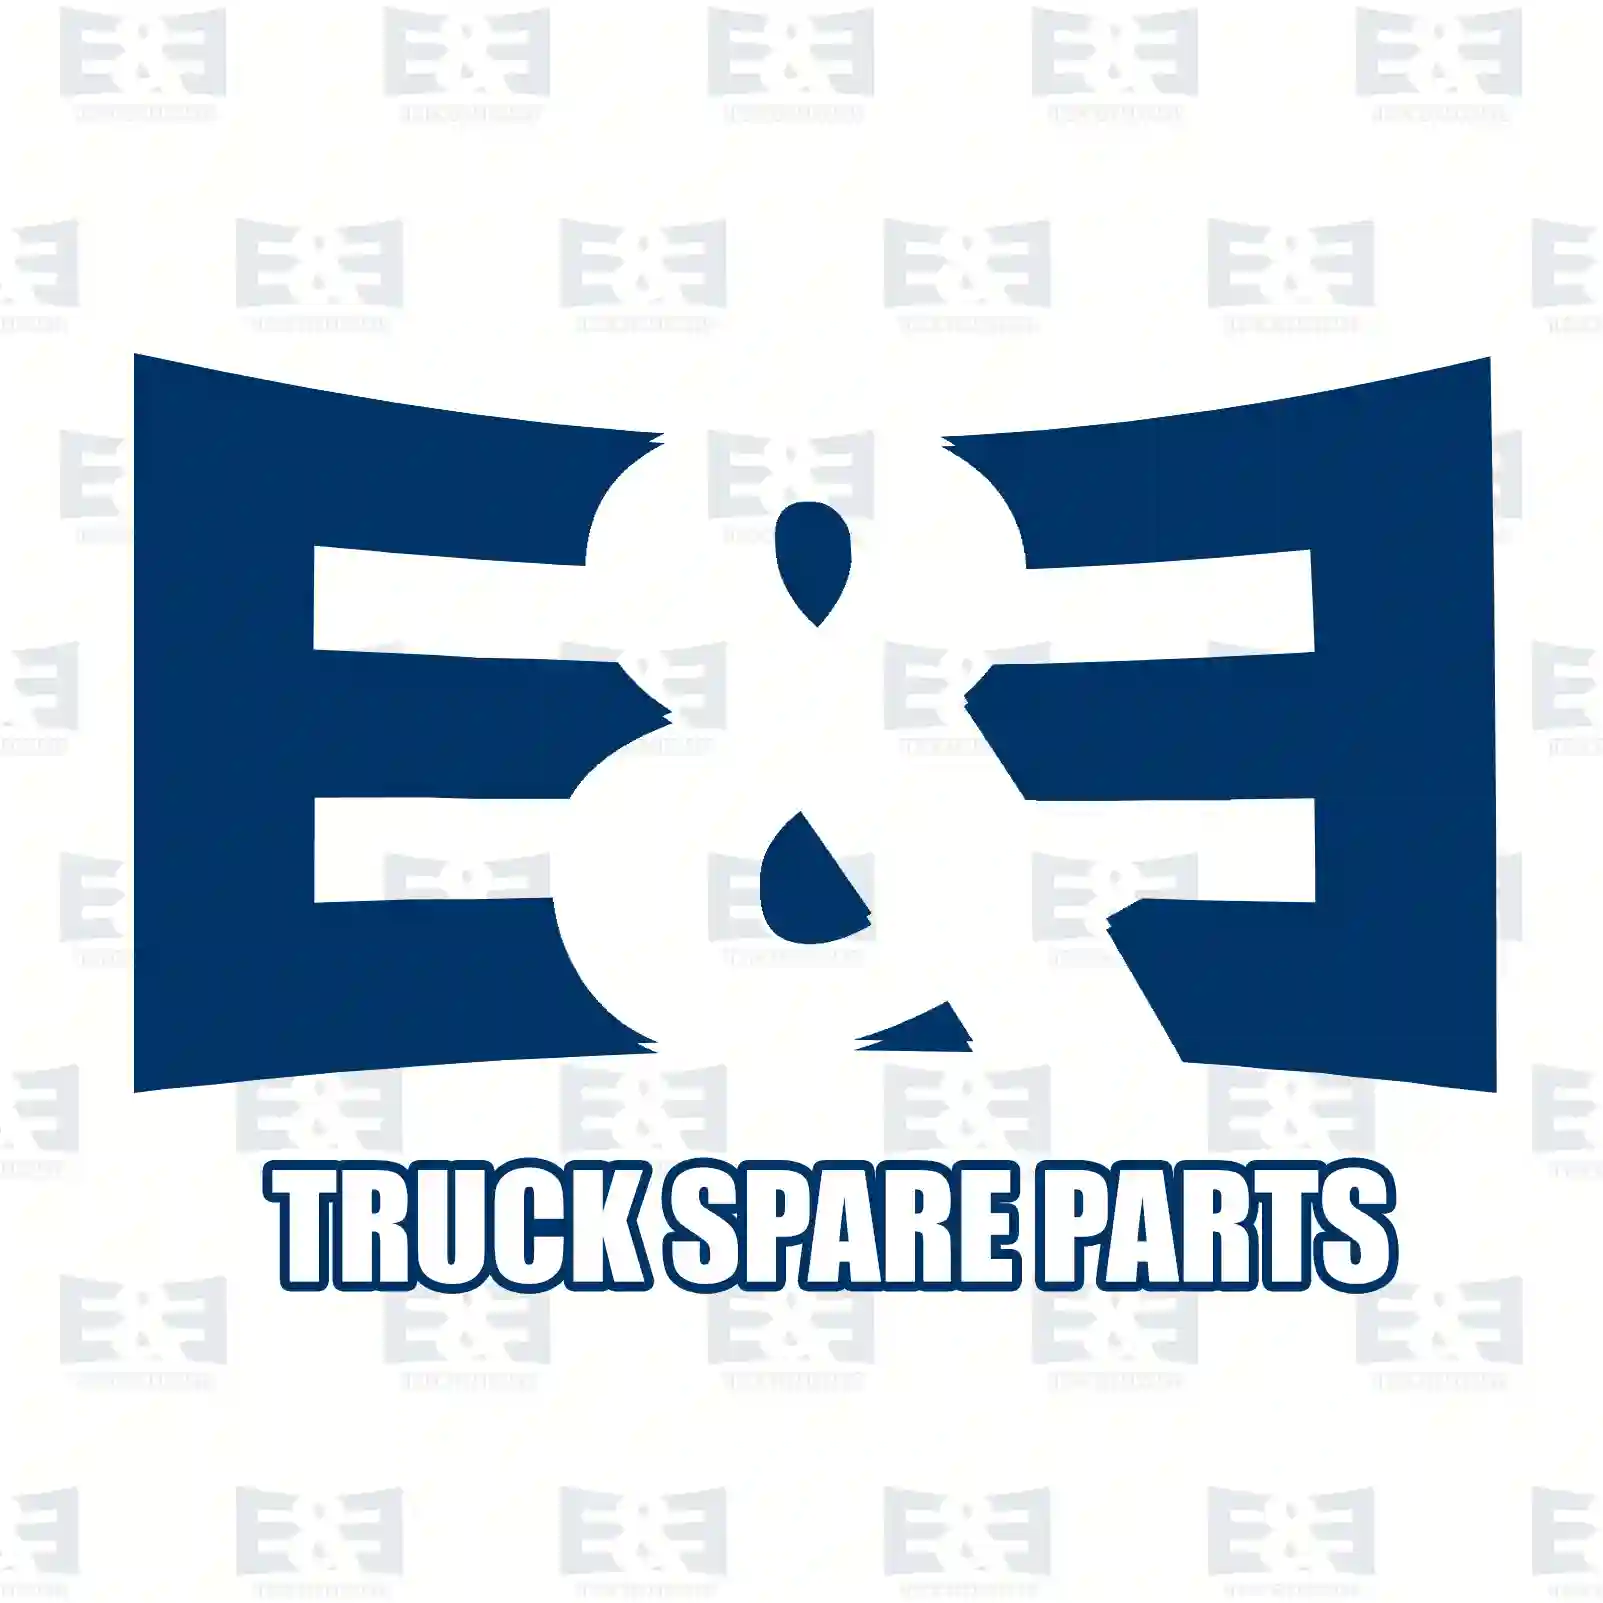 Oil seal, 2E2294066, 958861, ZG02656-0008, ||  2E2294066 E&E Truck Spare Parts | Truck Spare Parts, Auotomotive Spare Parts Oil seal, 2E2294066, 958861, ZG02656-0008, ||  2E2294066 E&E Truck Spare Parts | Truck Spare Parts, Auotomotive Spare Parts